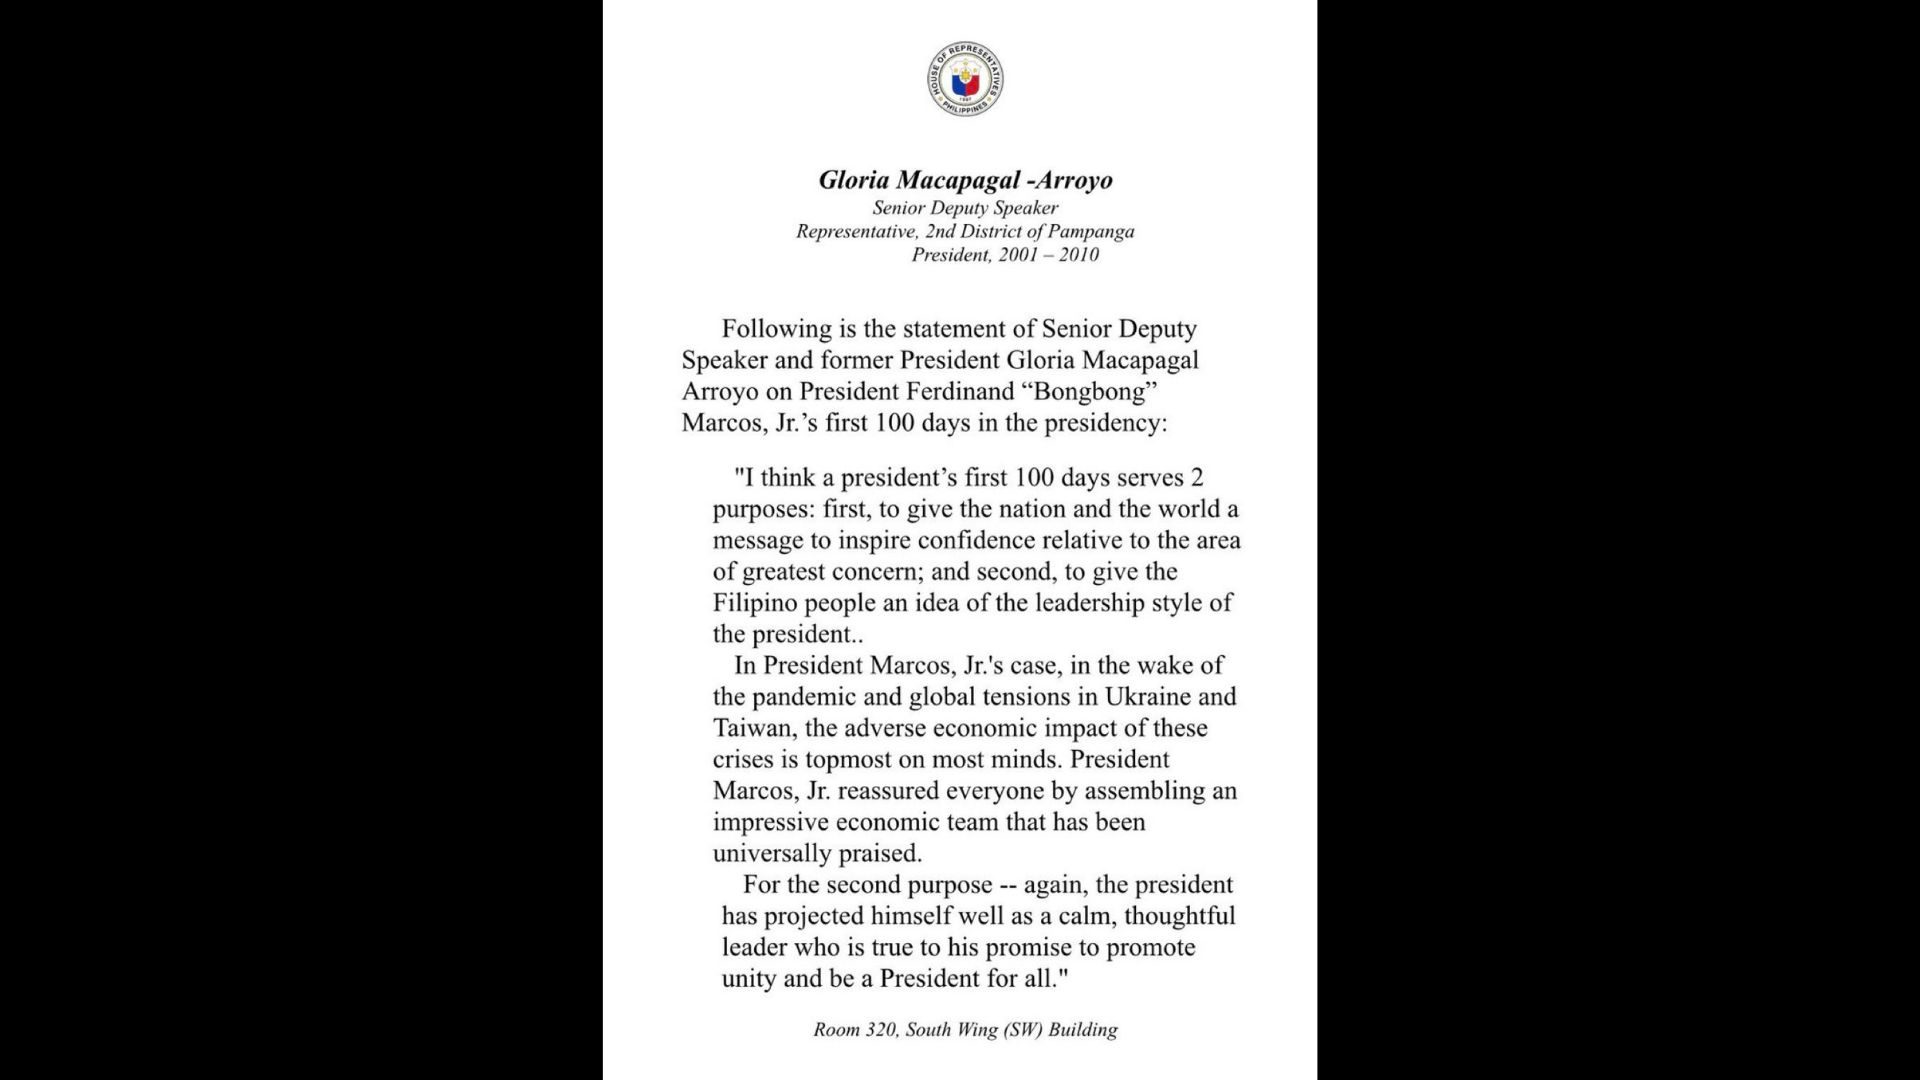 Pagulong Marcos ipinakita ang pagiging “calm, thoughtful leader” sa unang 100-araw sa puwesto ayon kay Congw. Arroyo